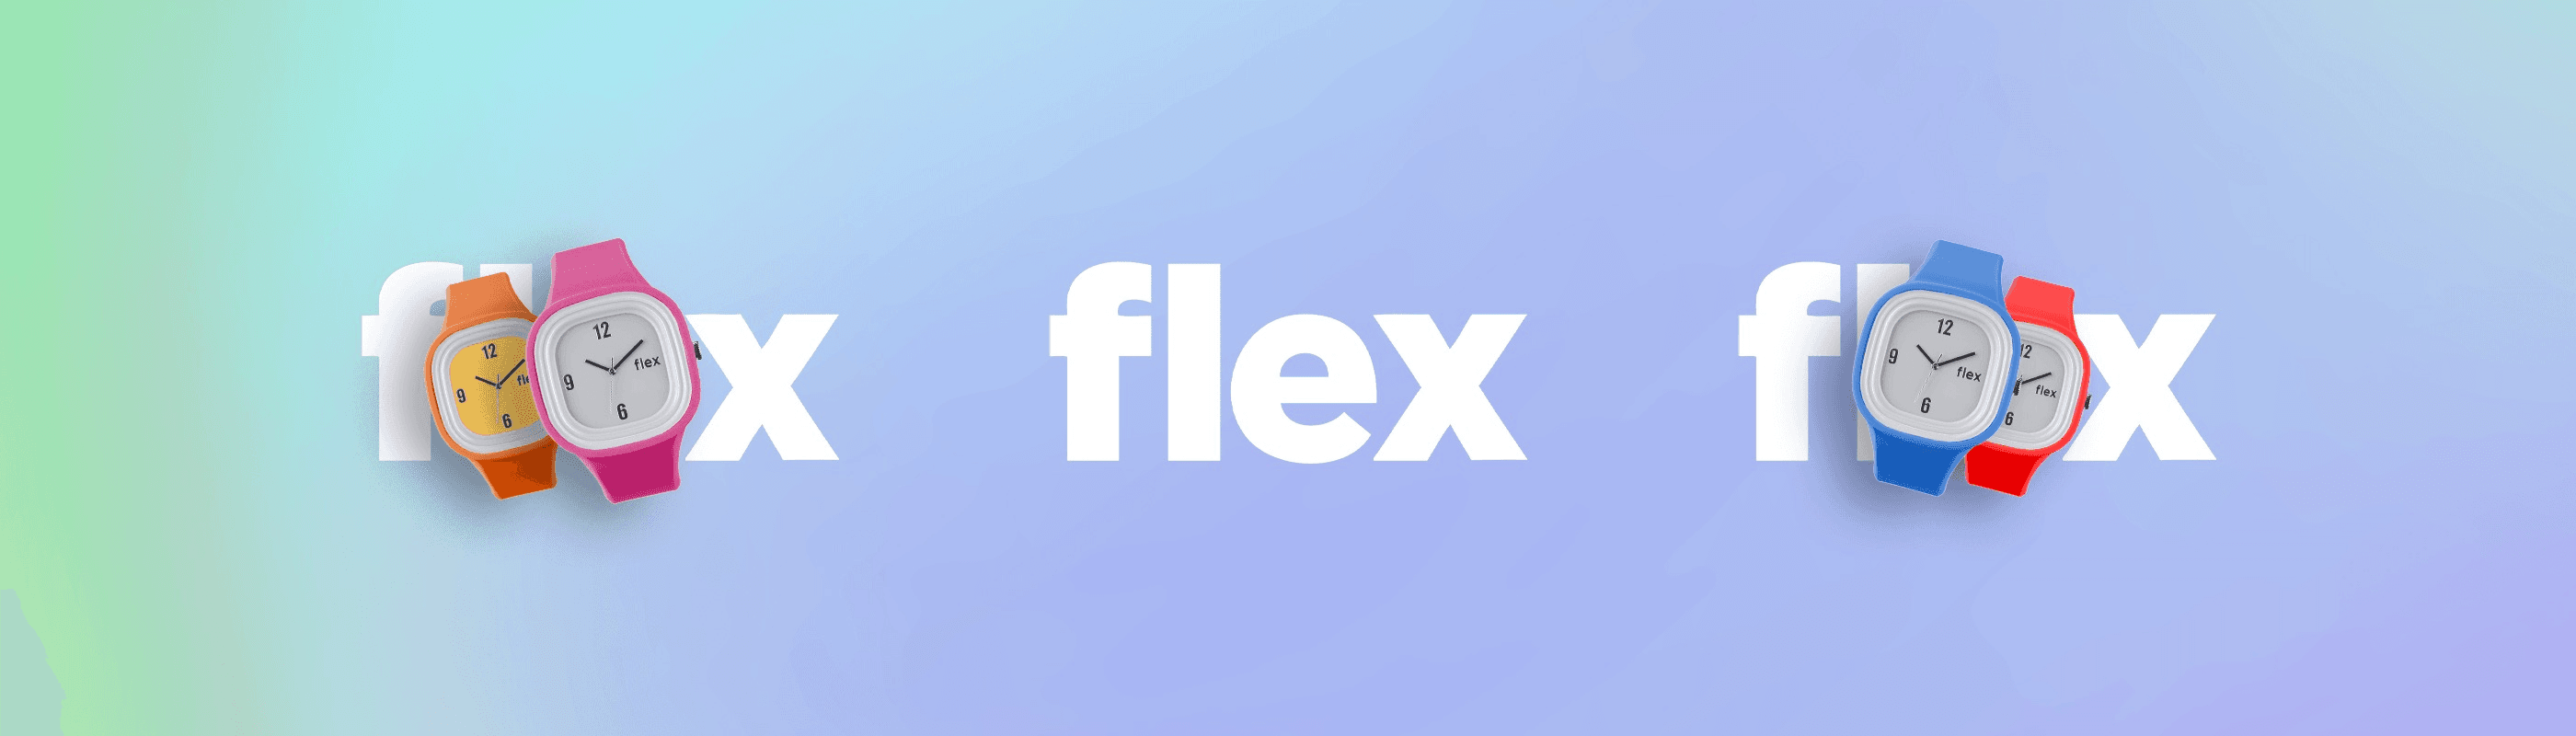 FlexContractWallet 横幅